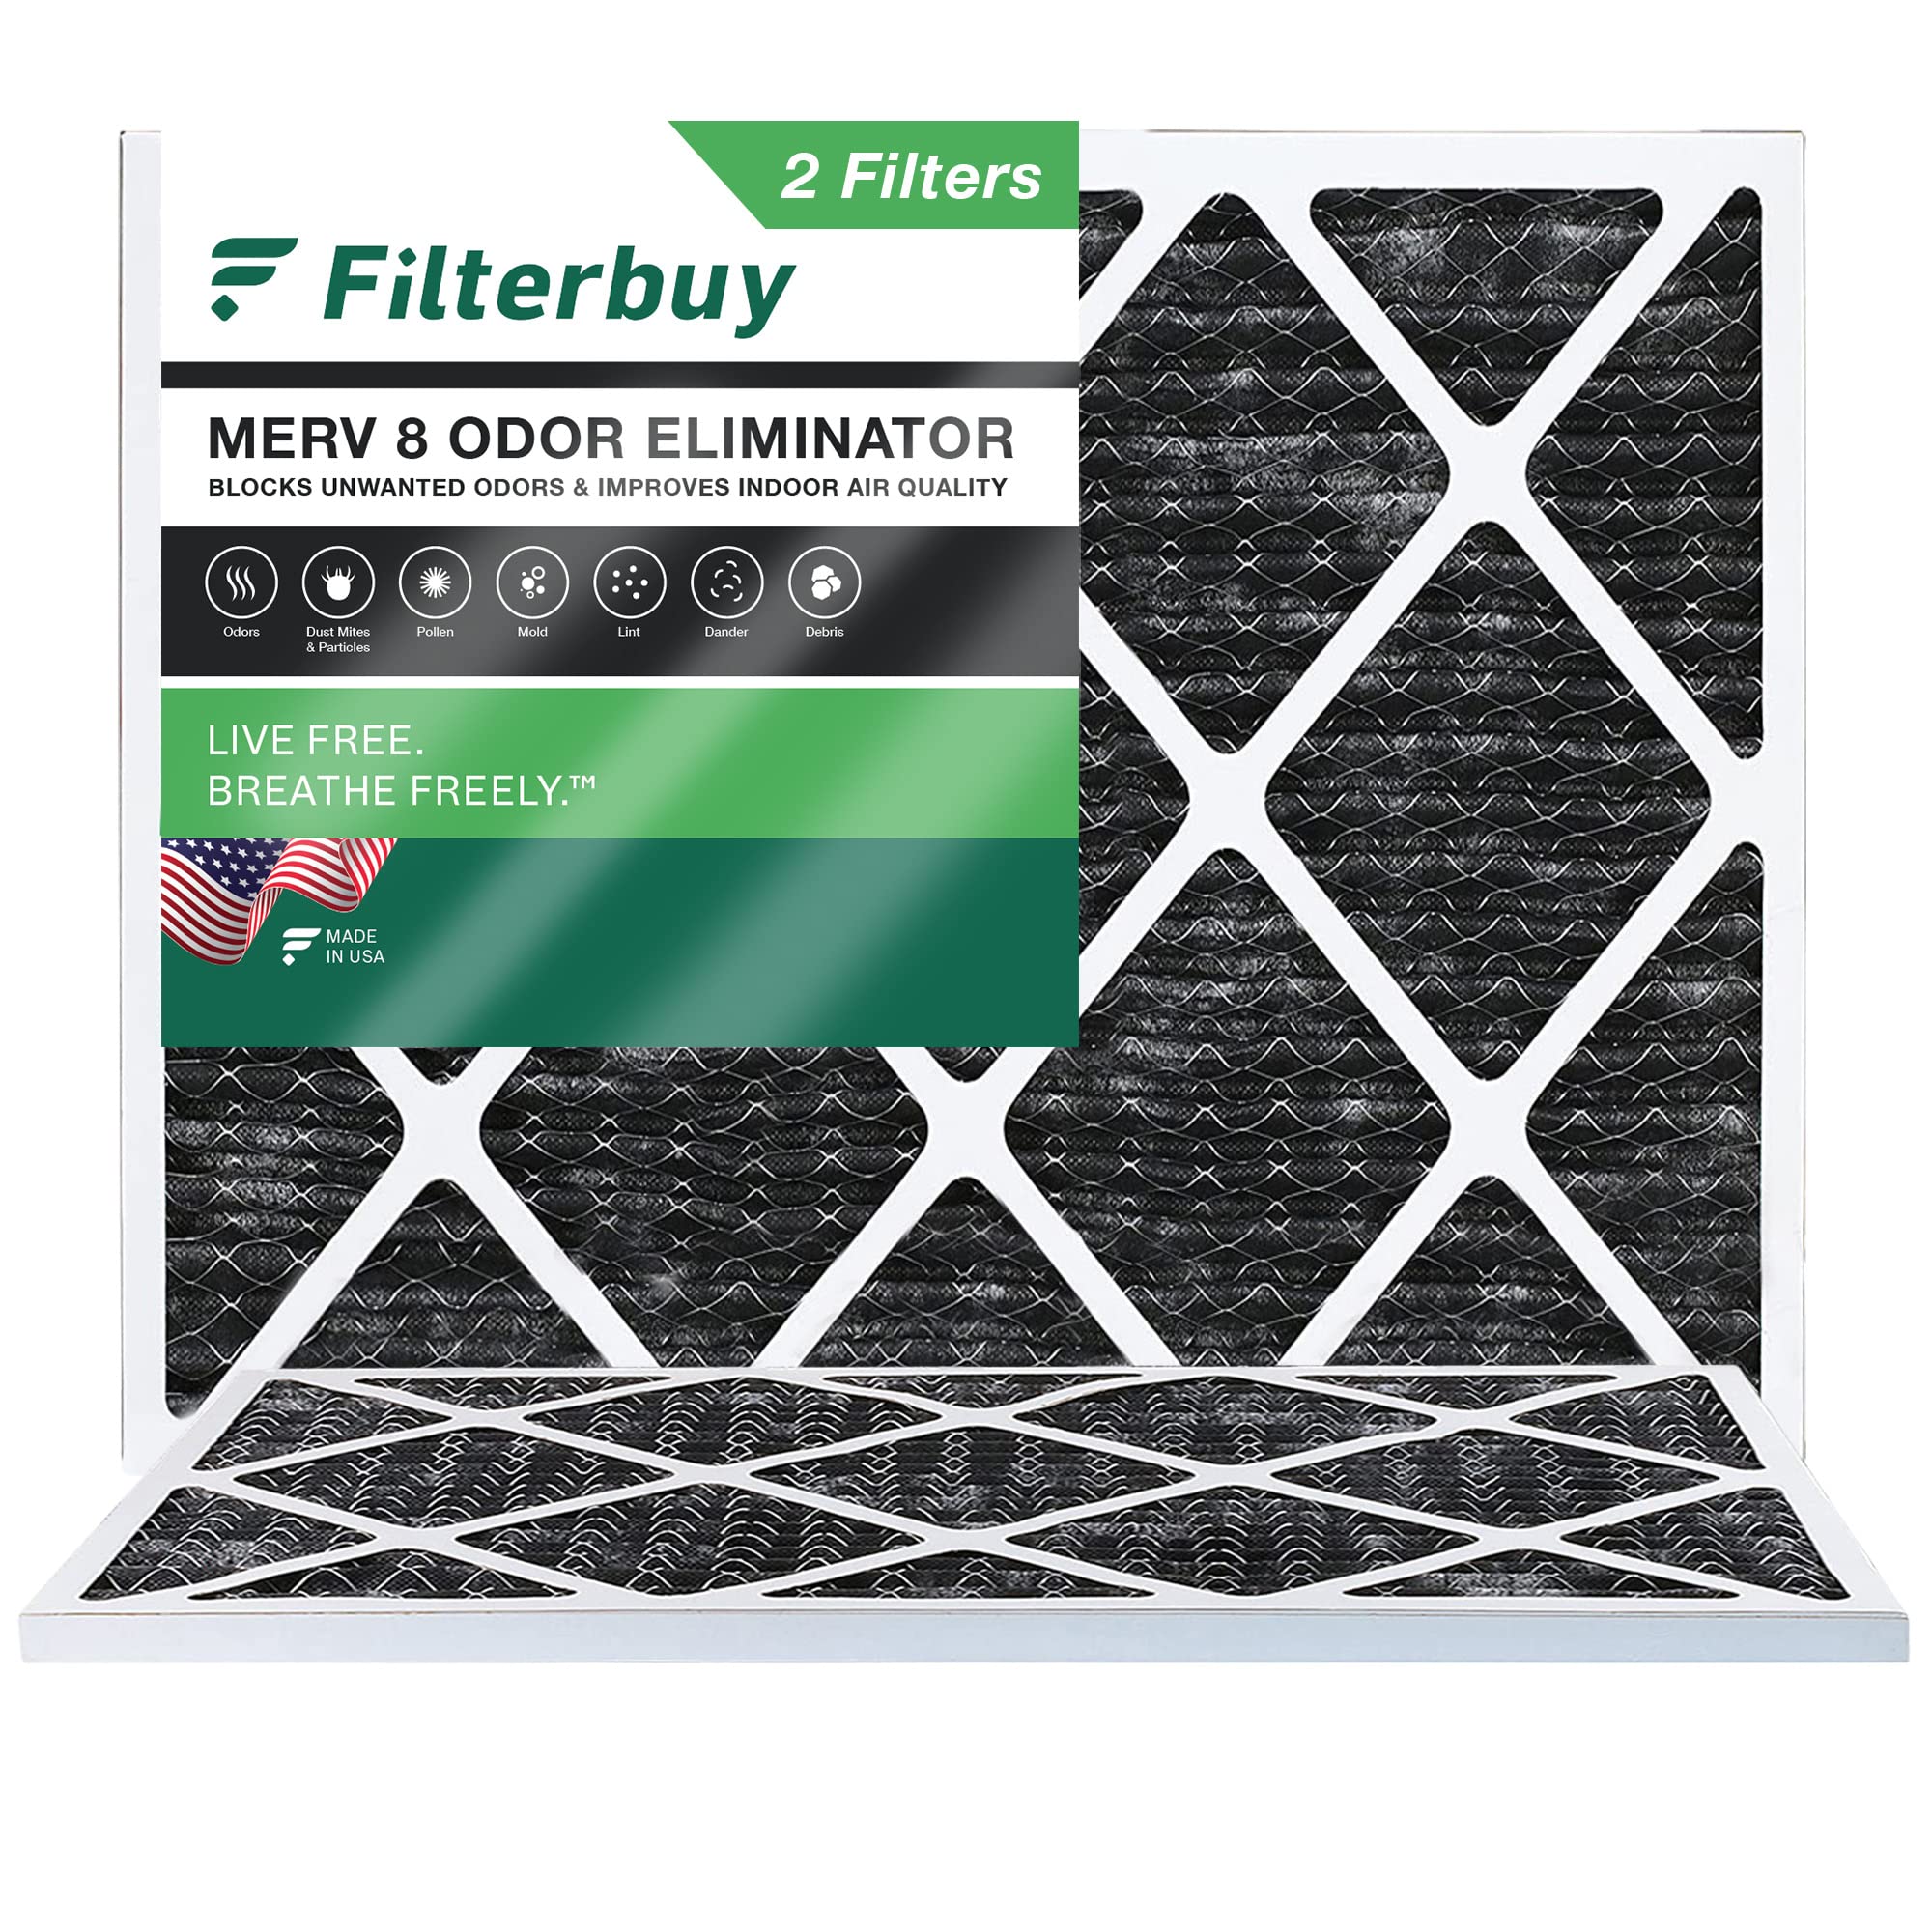 FilterBuy Allergen-Geruchskiller 24x30x1 MERV 8 Plissee AC Ofen-Luftfilter mit Aktivkohle – 2 Stück – 24x30x1